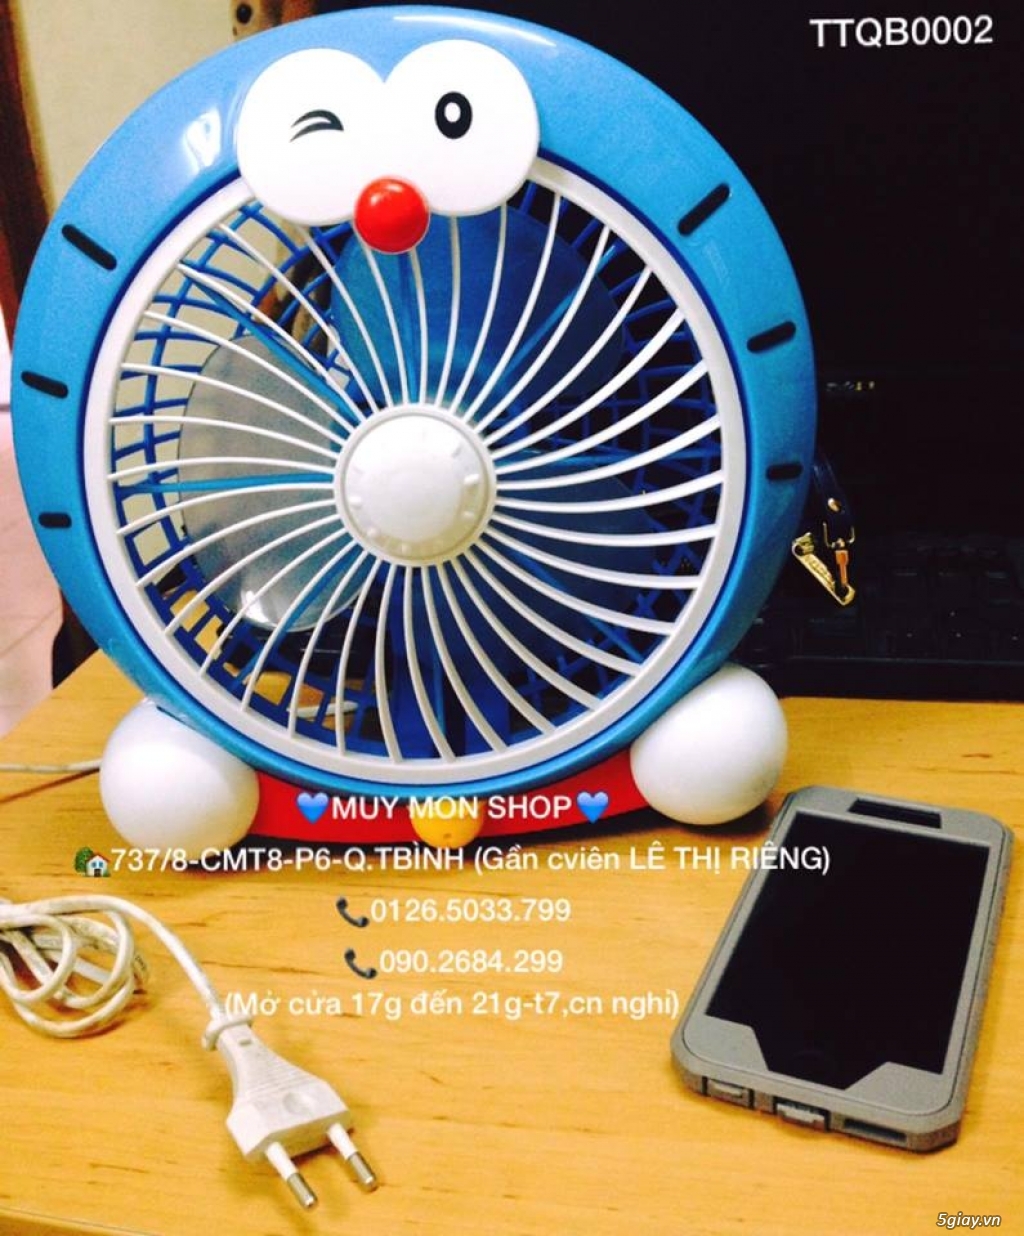 [MUY MON SHOP] Chuyên sỉ lẻ quà tặng Doraemon, kitty, stitch rẻ nhất - 36